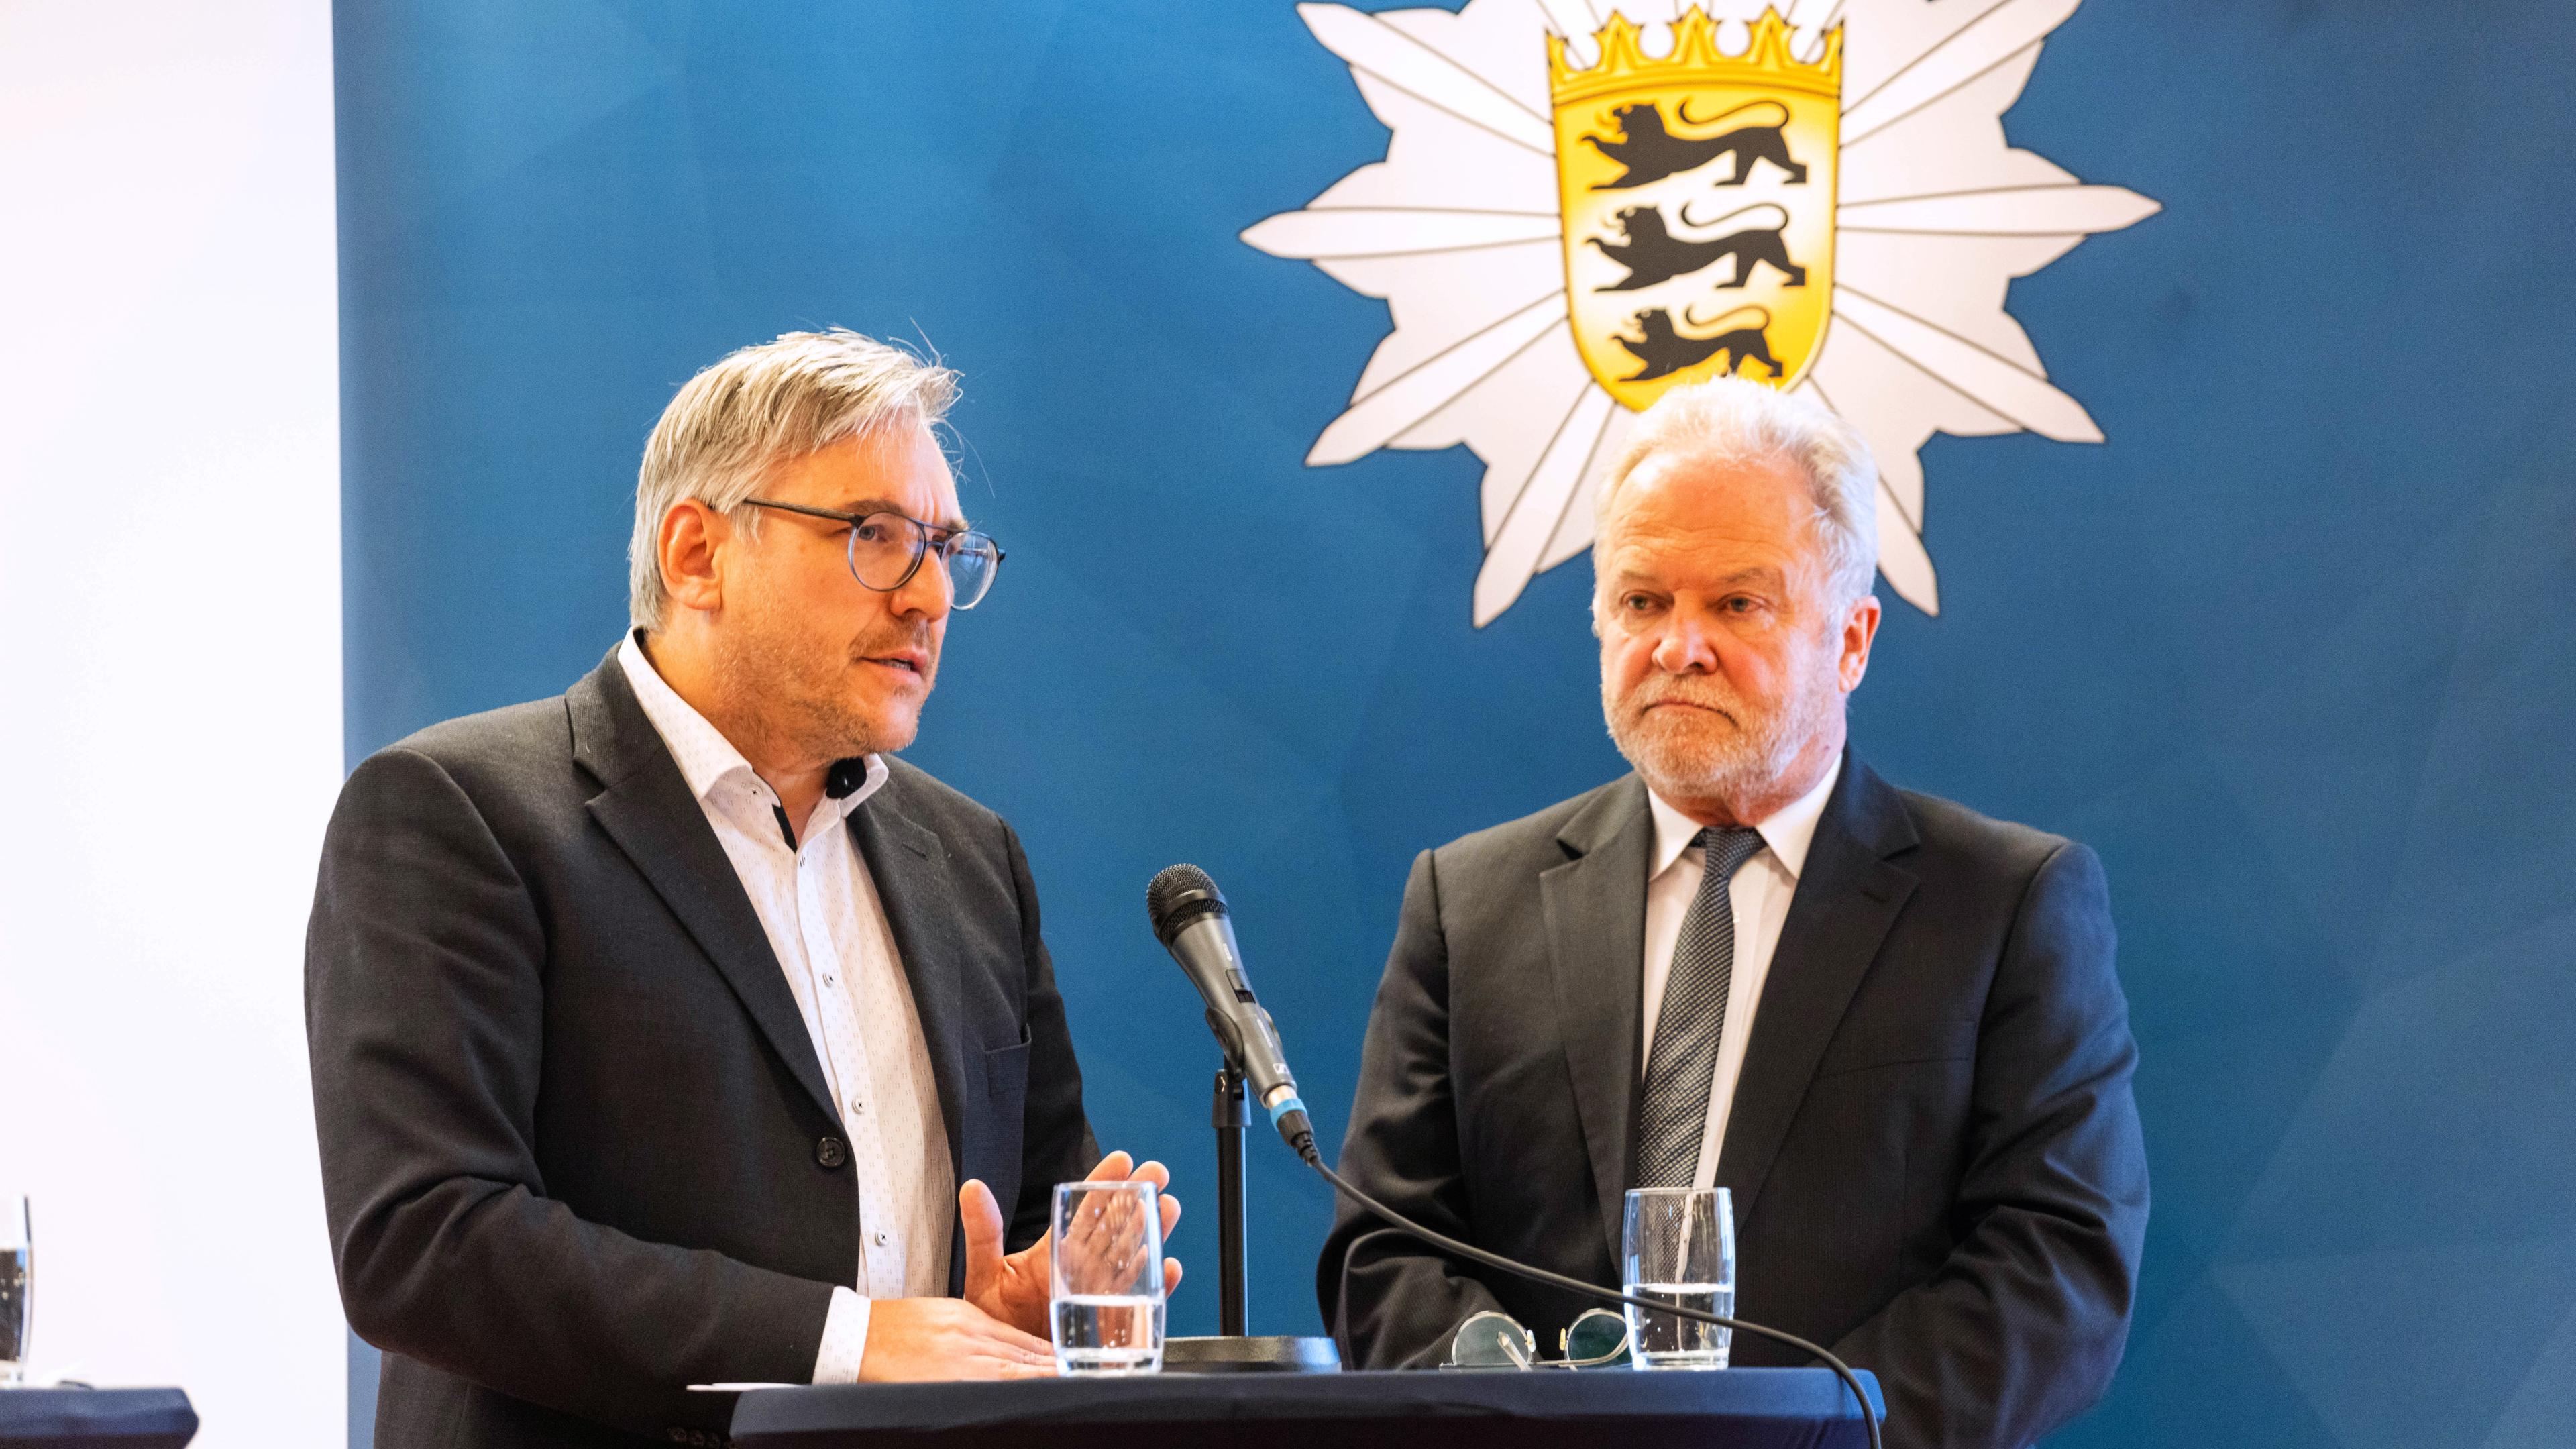 Werner Nagel (l), Referatsleiter der Schulaufsicht, steht neben Alexander Schwarz, Opferbeauftragter der Landesregierung, und spricht während einer Pressekonferenz